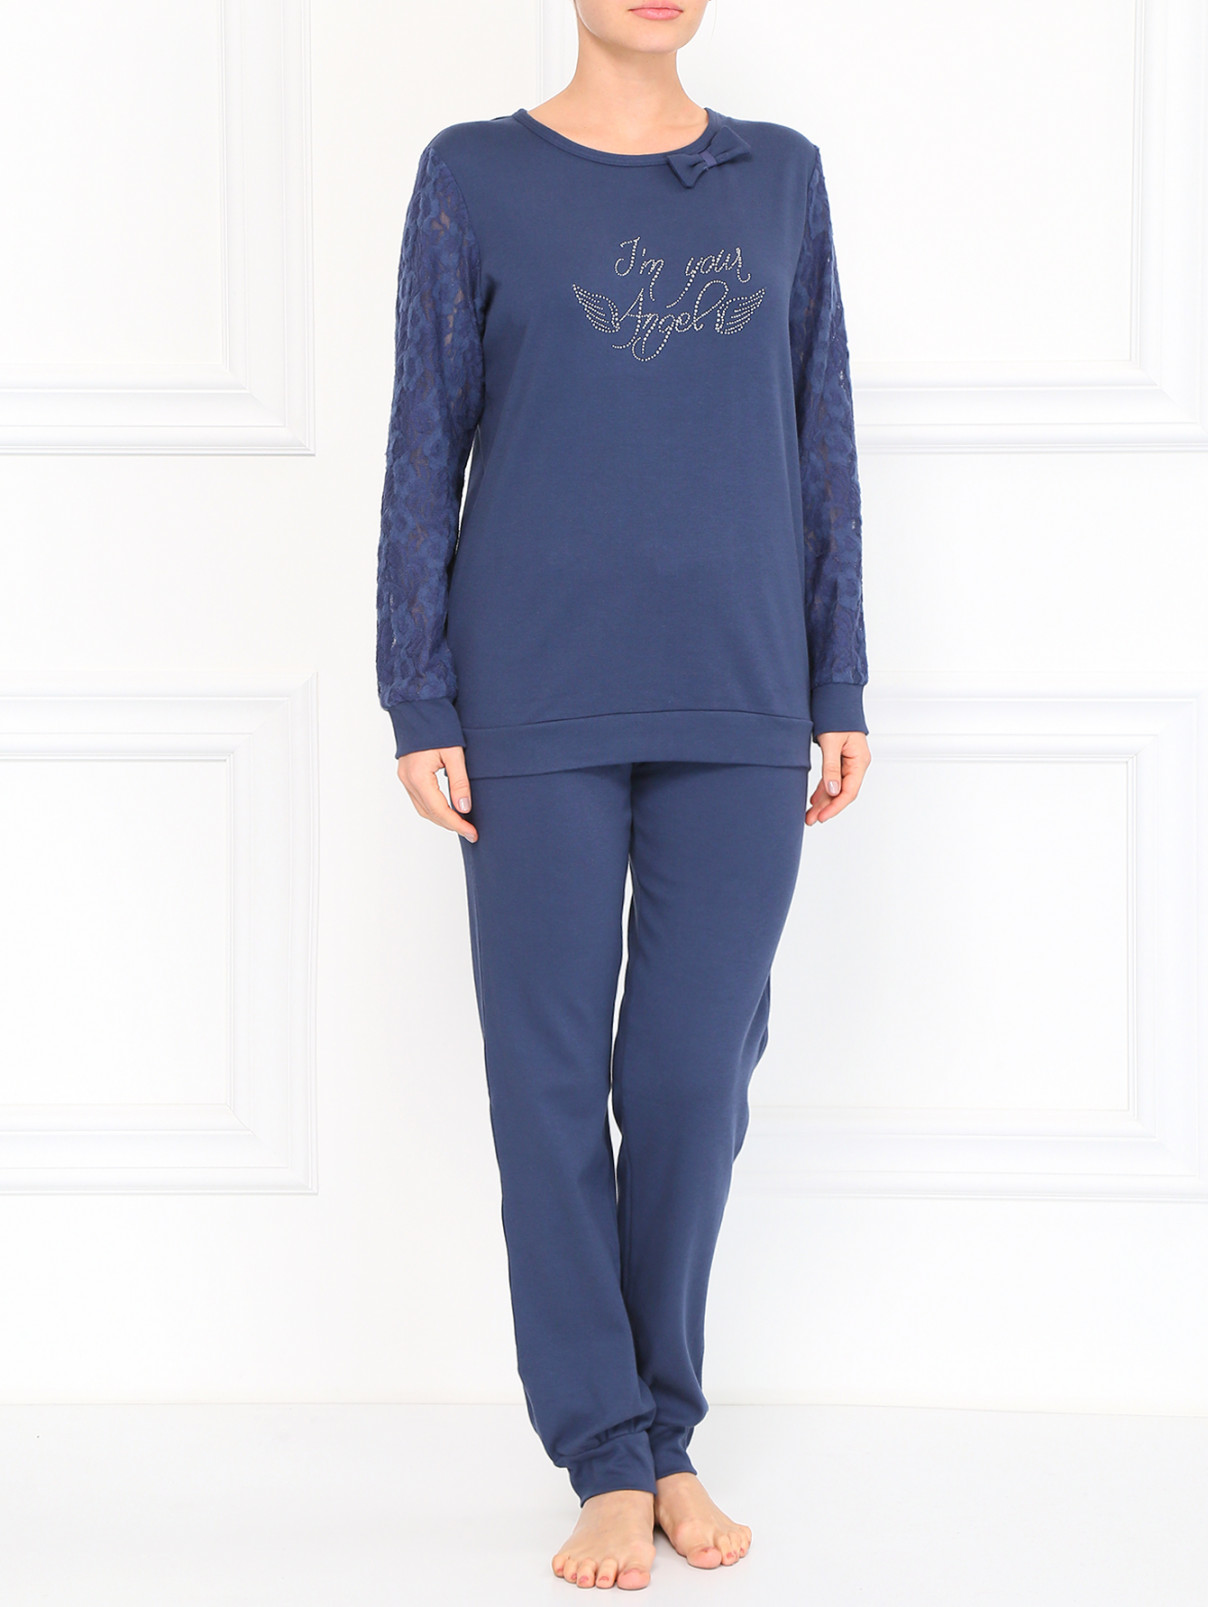 Трикотажные брюки с манжетами Rosapois  –  Модель Общий вид  – Цвет:  Синий